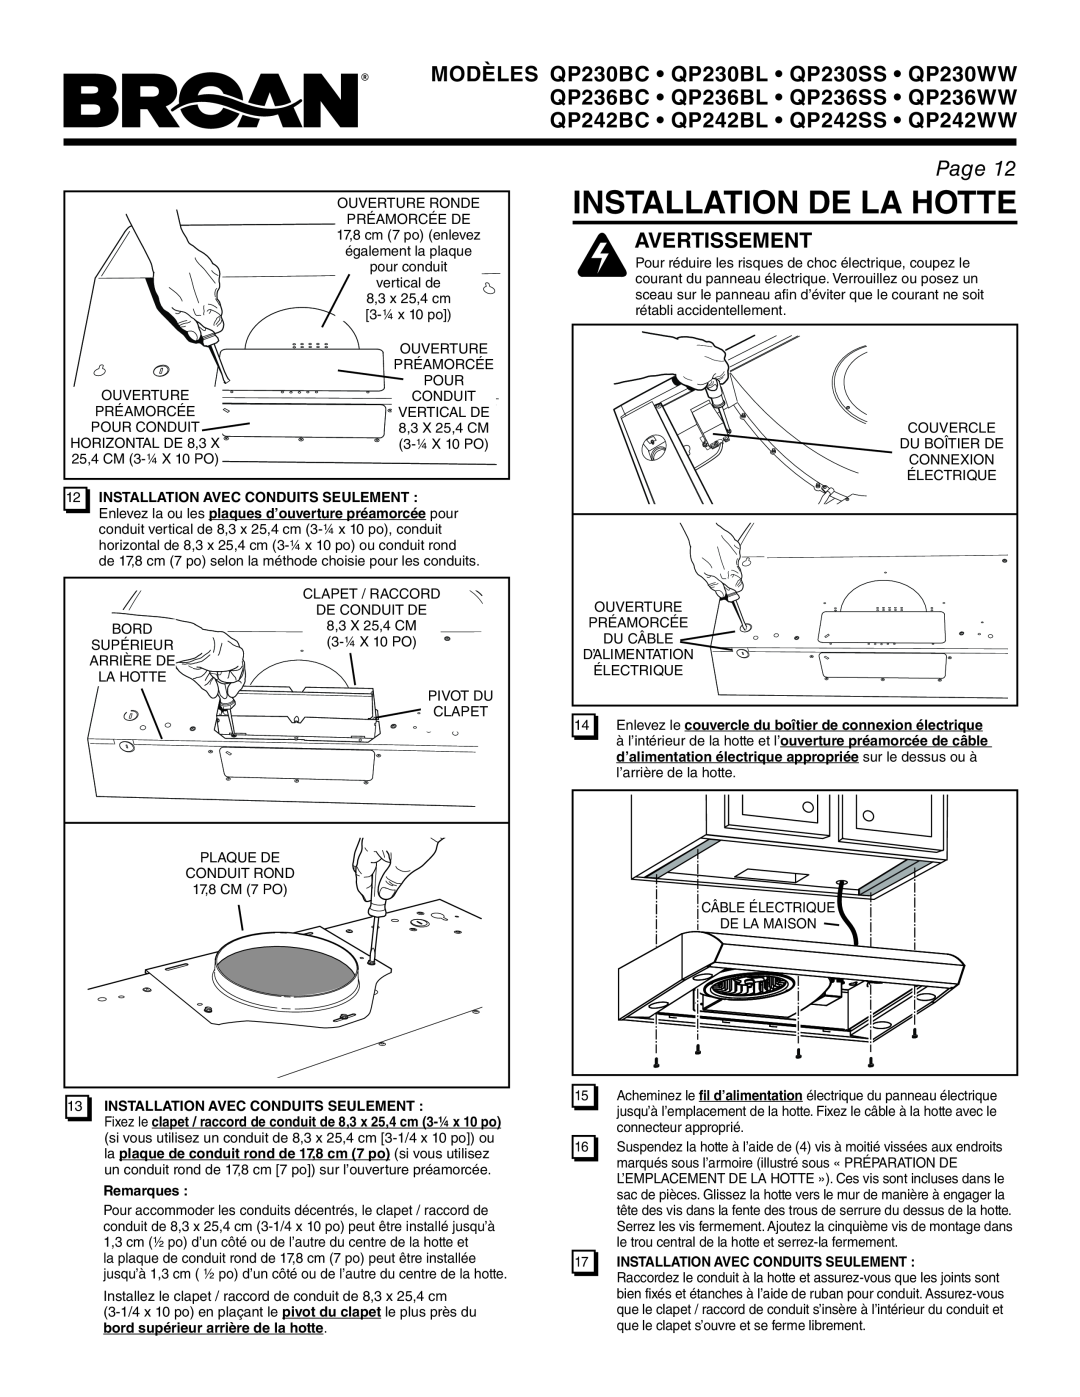 Broan QP242WW, QP242BL Installation De La Hotte, Avertissement, Page, 12INSTALLATION AVEC CONDUITS SEULEMENT, Remarques 